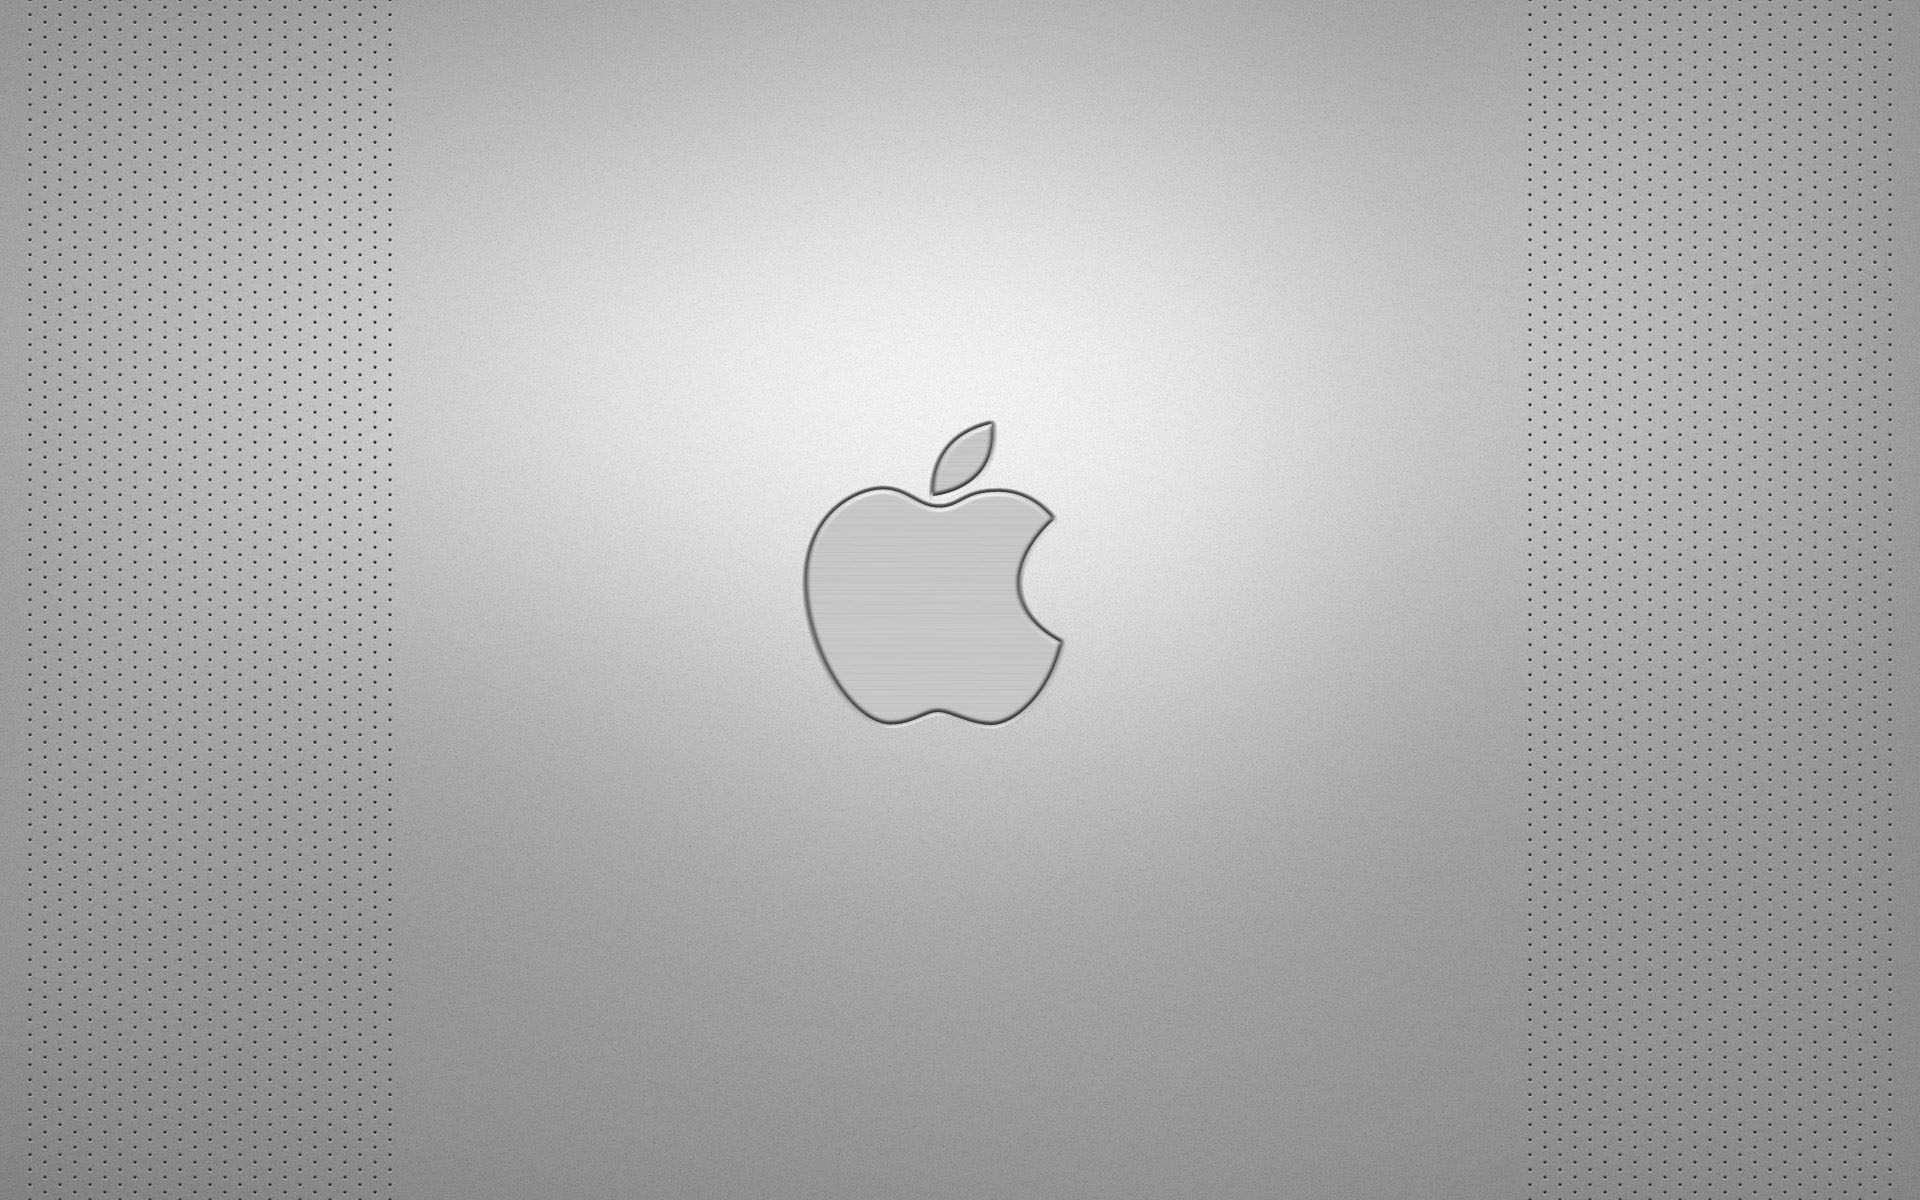 壁纸1920x1200Apple主题 35 13壁纸 Apple主题壁纸 Apple主题图片 Apple主题素材 系统壁纸 系统图库 系统图片素材桌面壁纸